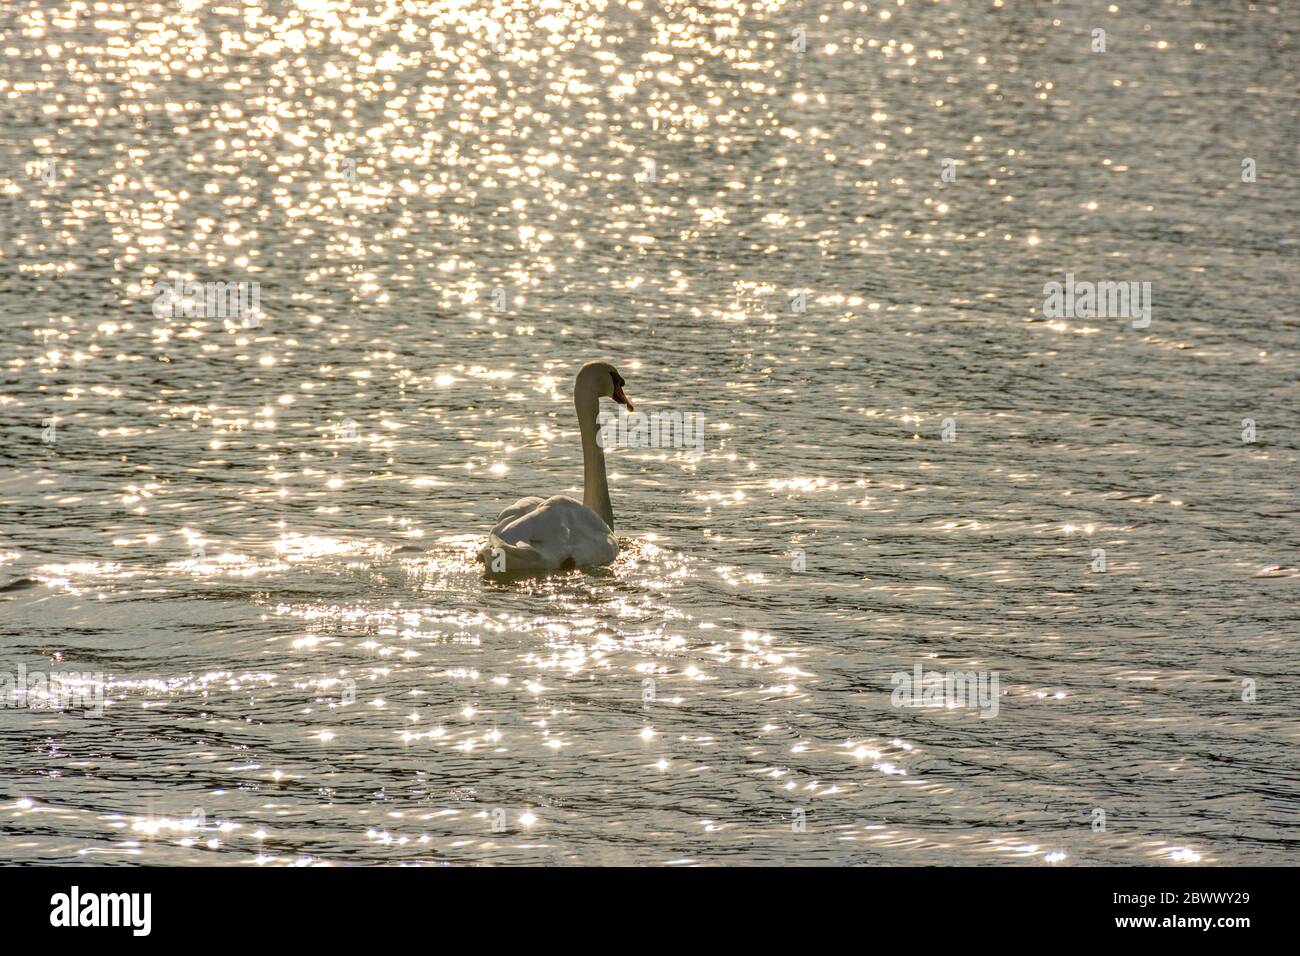 Scatto di un bel cigno che nuota nel lago che splende sotto i raggi del sole lucenti Foto Stock